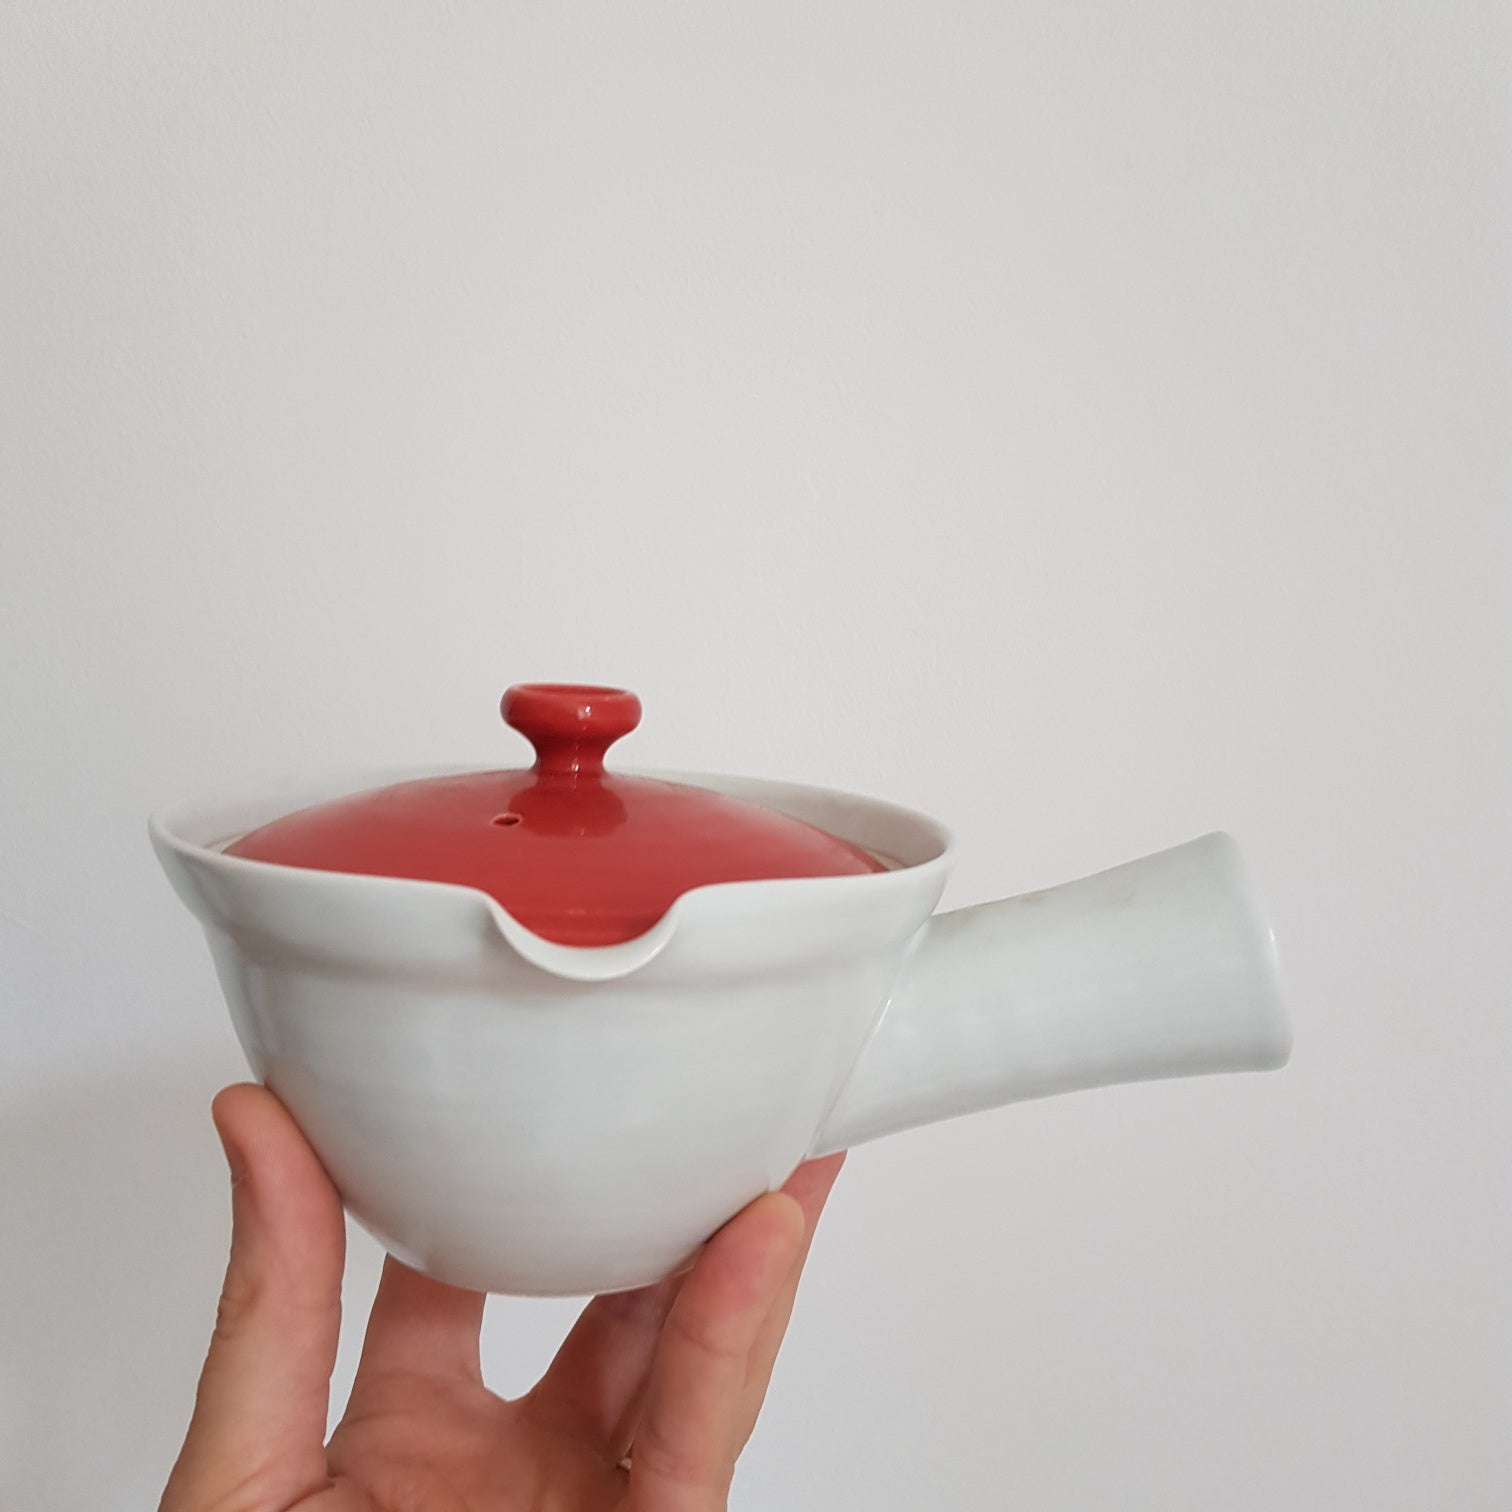 Houzan Sawa Japoniškas porcelianinis arbatinukas 300 ml